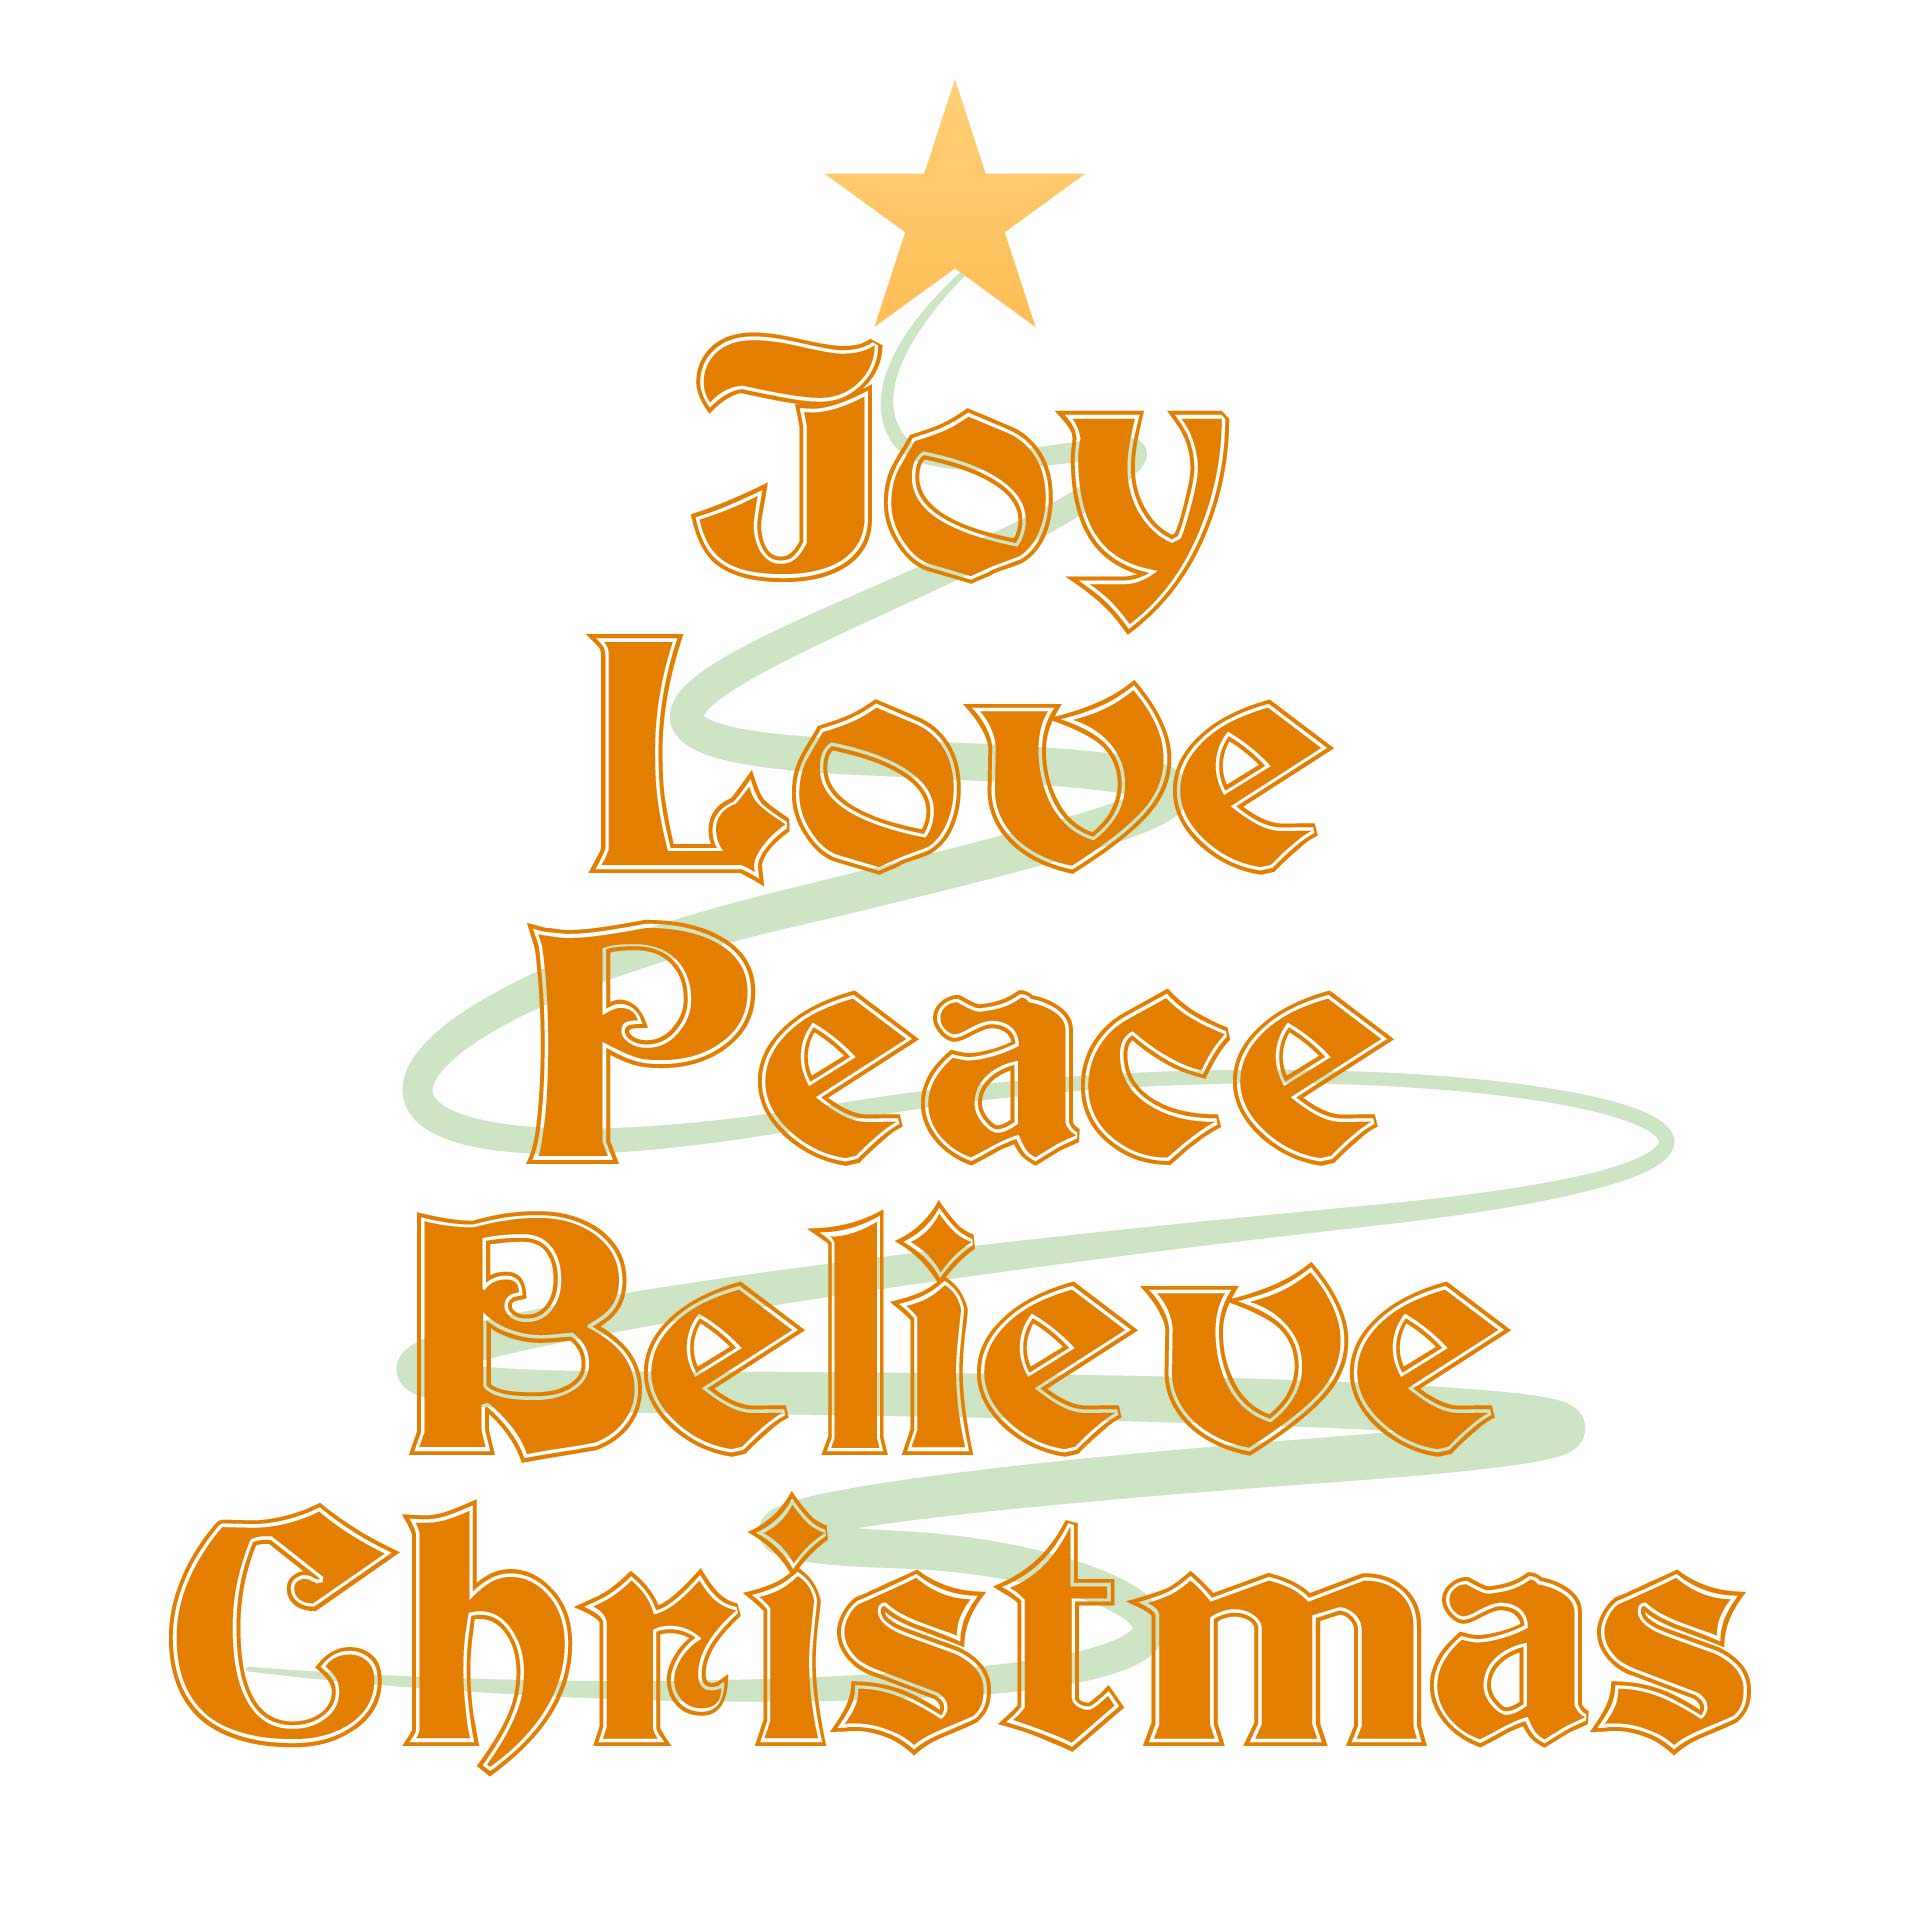 Christian Christmas Greetings Card 10 Free PDF Printables Printablee